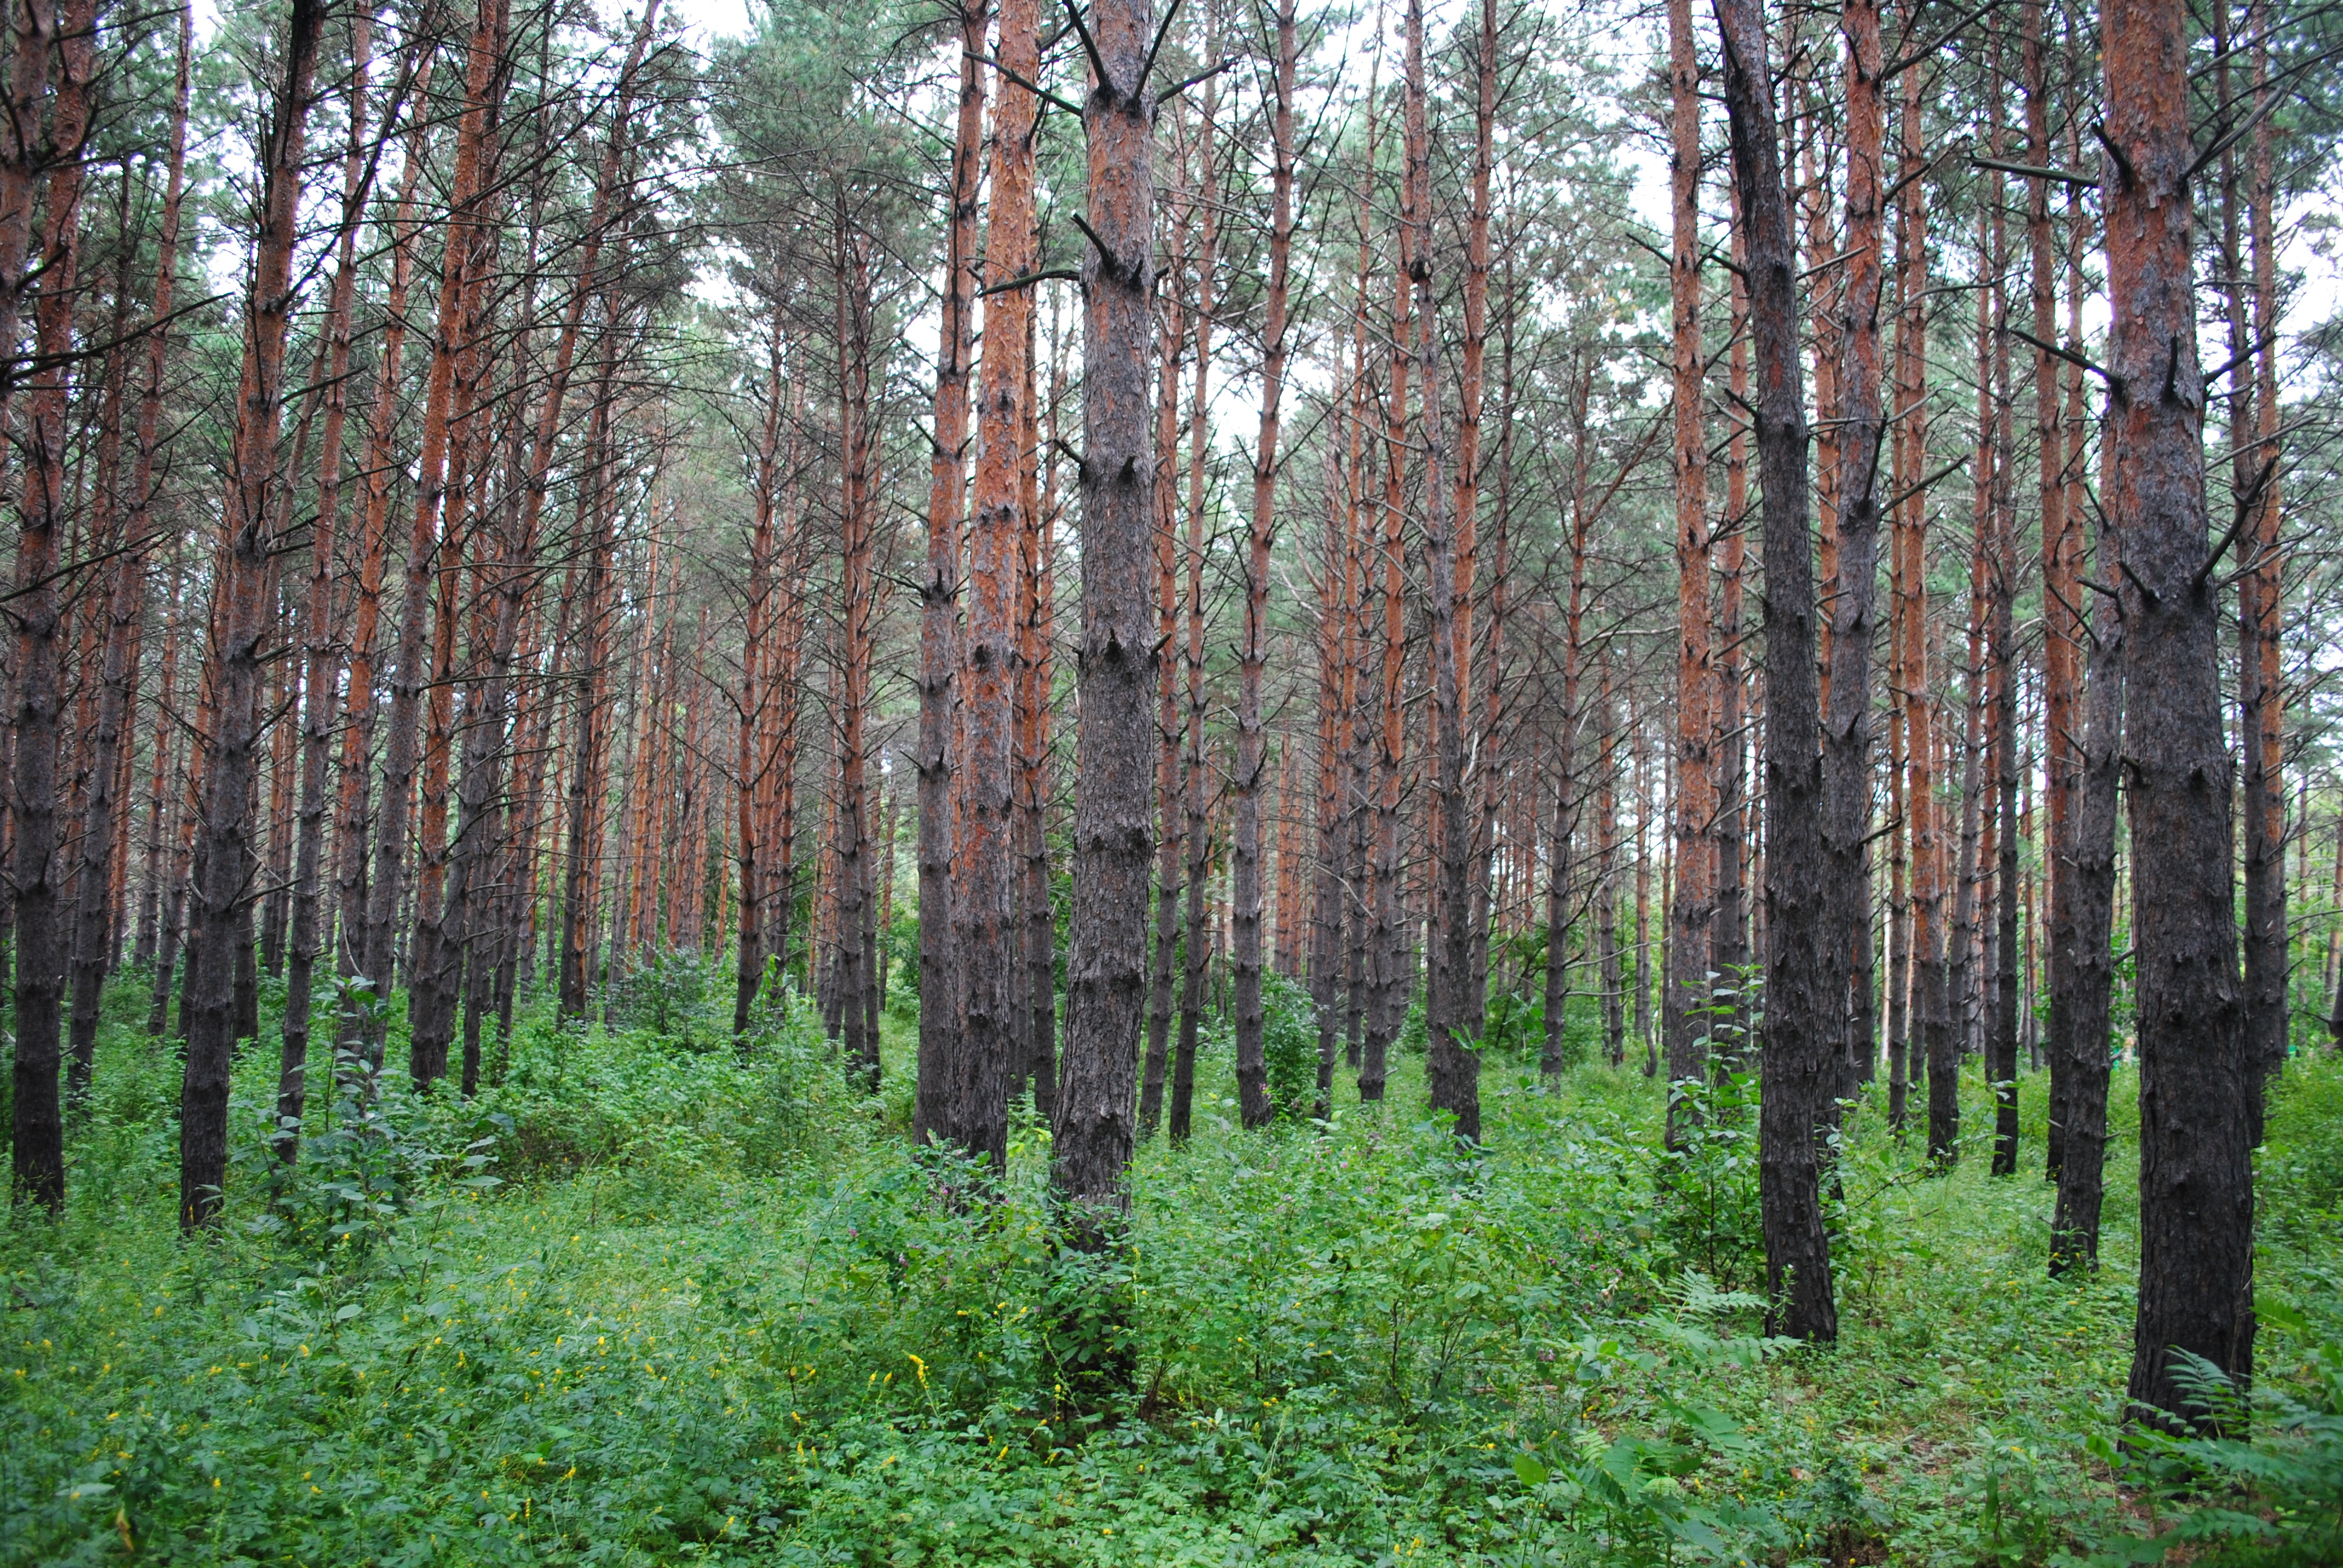 В 2022 году в Приамурье выросла сумма взносов за пользование лесами / В прошлом году юридические и физические лица за пользование участками лесного фонда перечислили более 1,2 миллиарда рублей в бюджеты разных уровней. Это на 74,7 миллиона больше, чем в 2021 году. Полученные средства в том числе направляются на приобретение техники и оборудования, защиту лесов от пожаров, мероприятия по лесовосстановлению и лесоразведению.